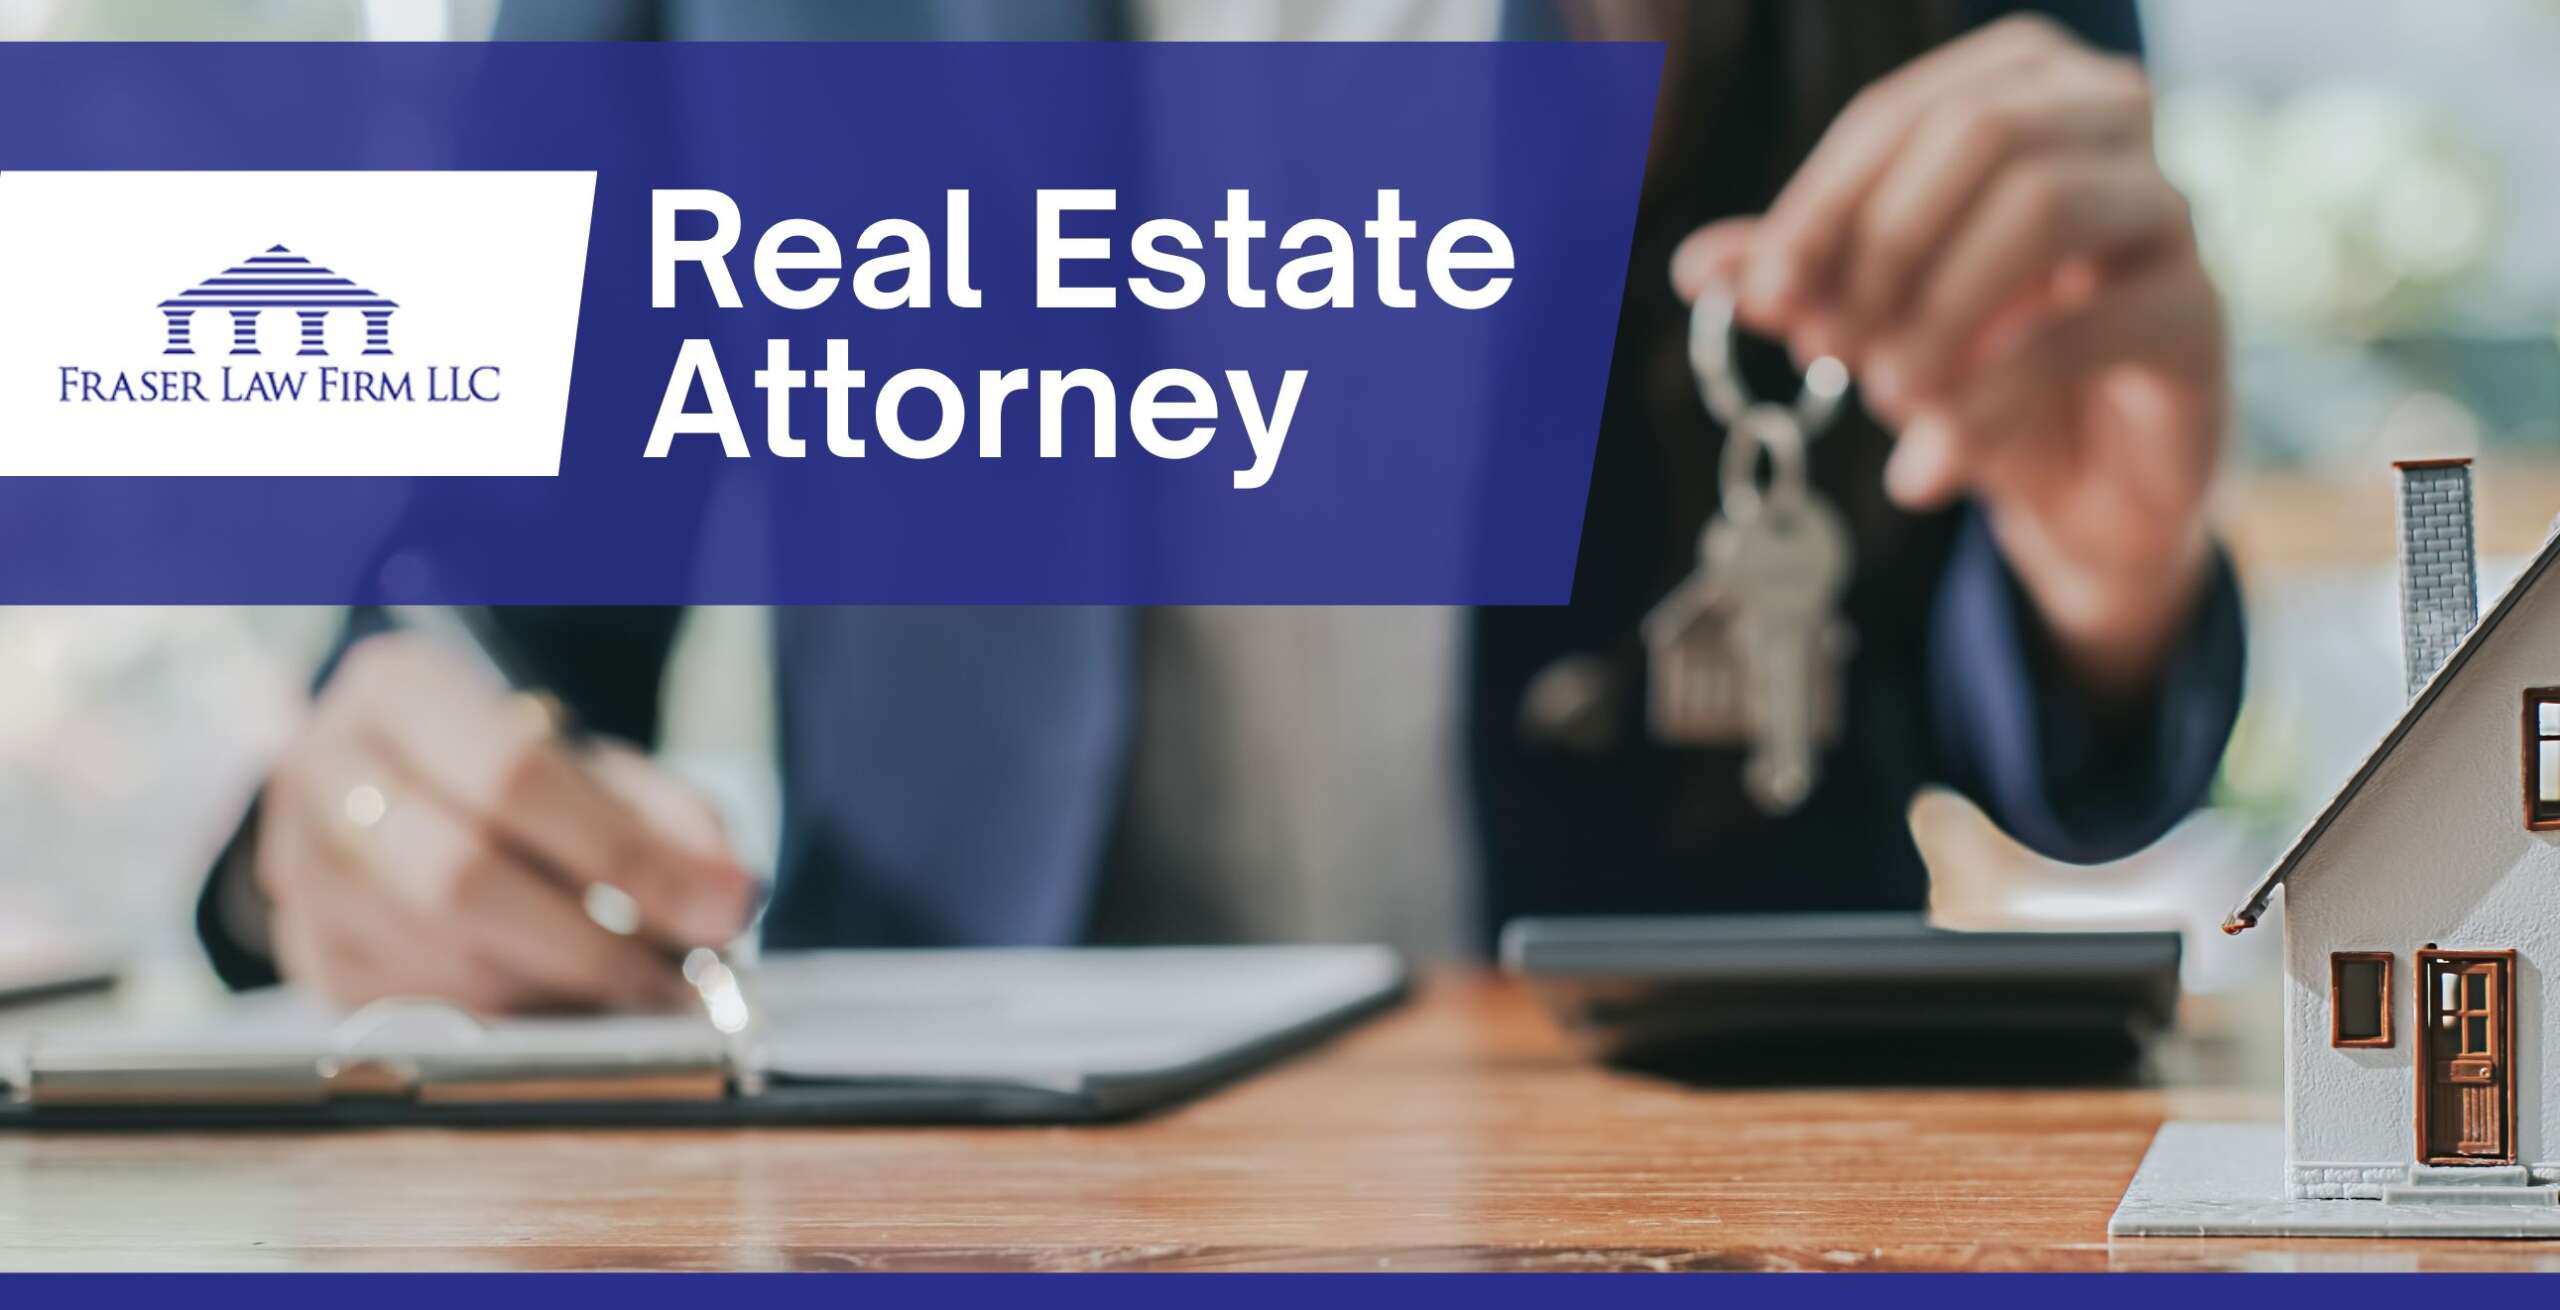 Real Estate Attorney Hilton Head